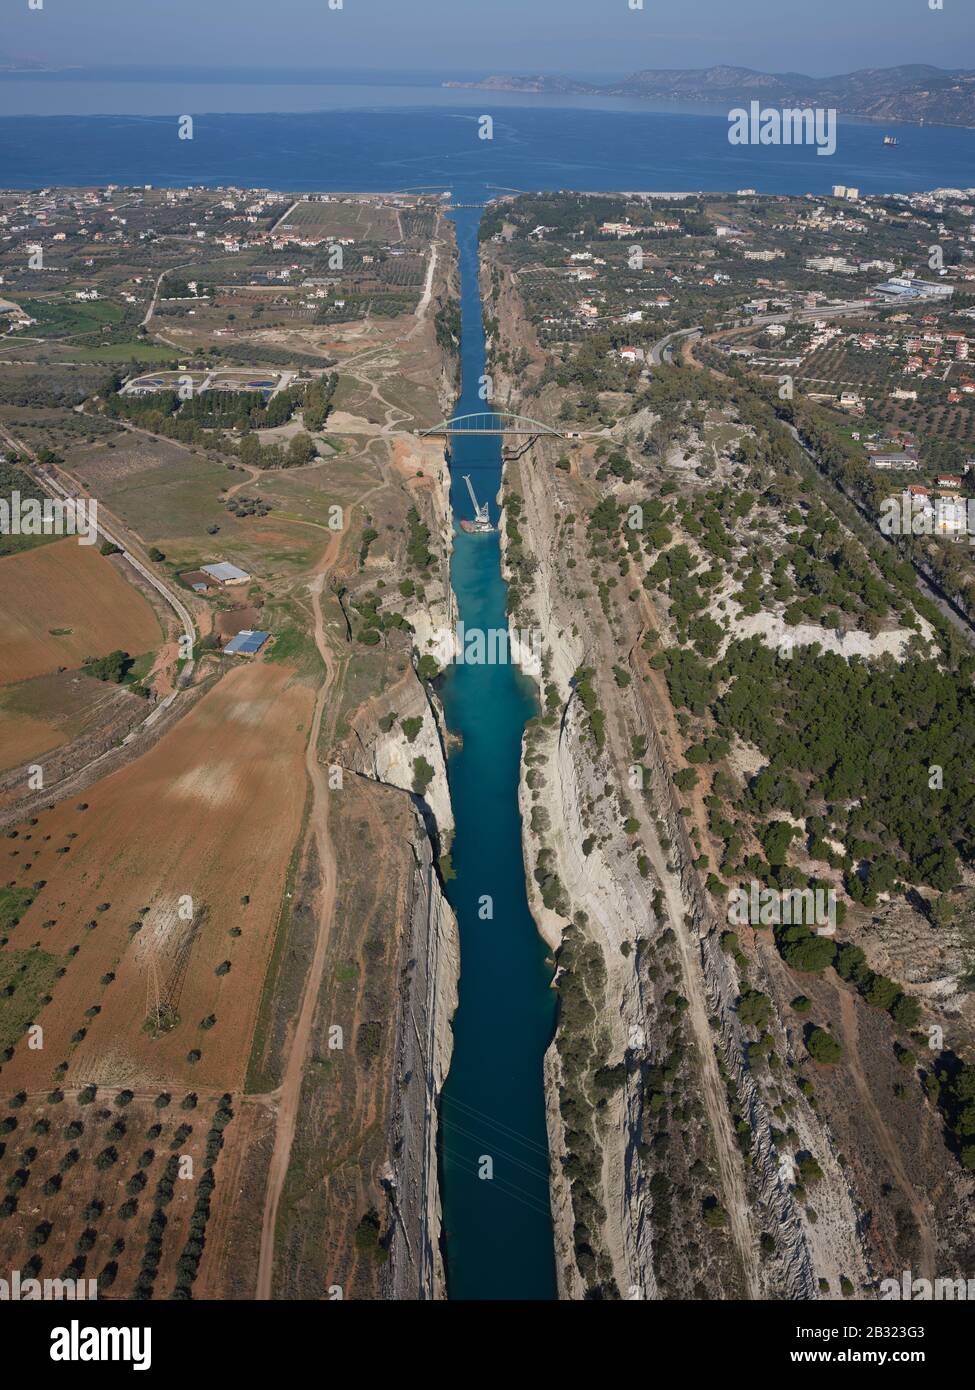 VISTA AEREA. Canale di Corinto lungo 6,4 km che collega il Golfo di Corinto in lontananza al Mar Egeo. Istmo di Corinto, Grecia. Foto Stock